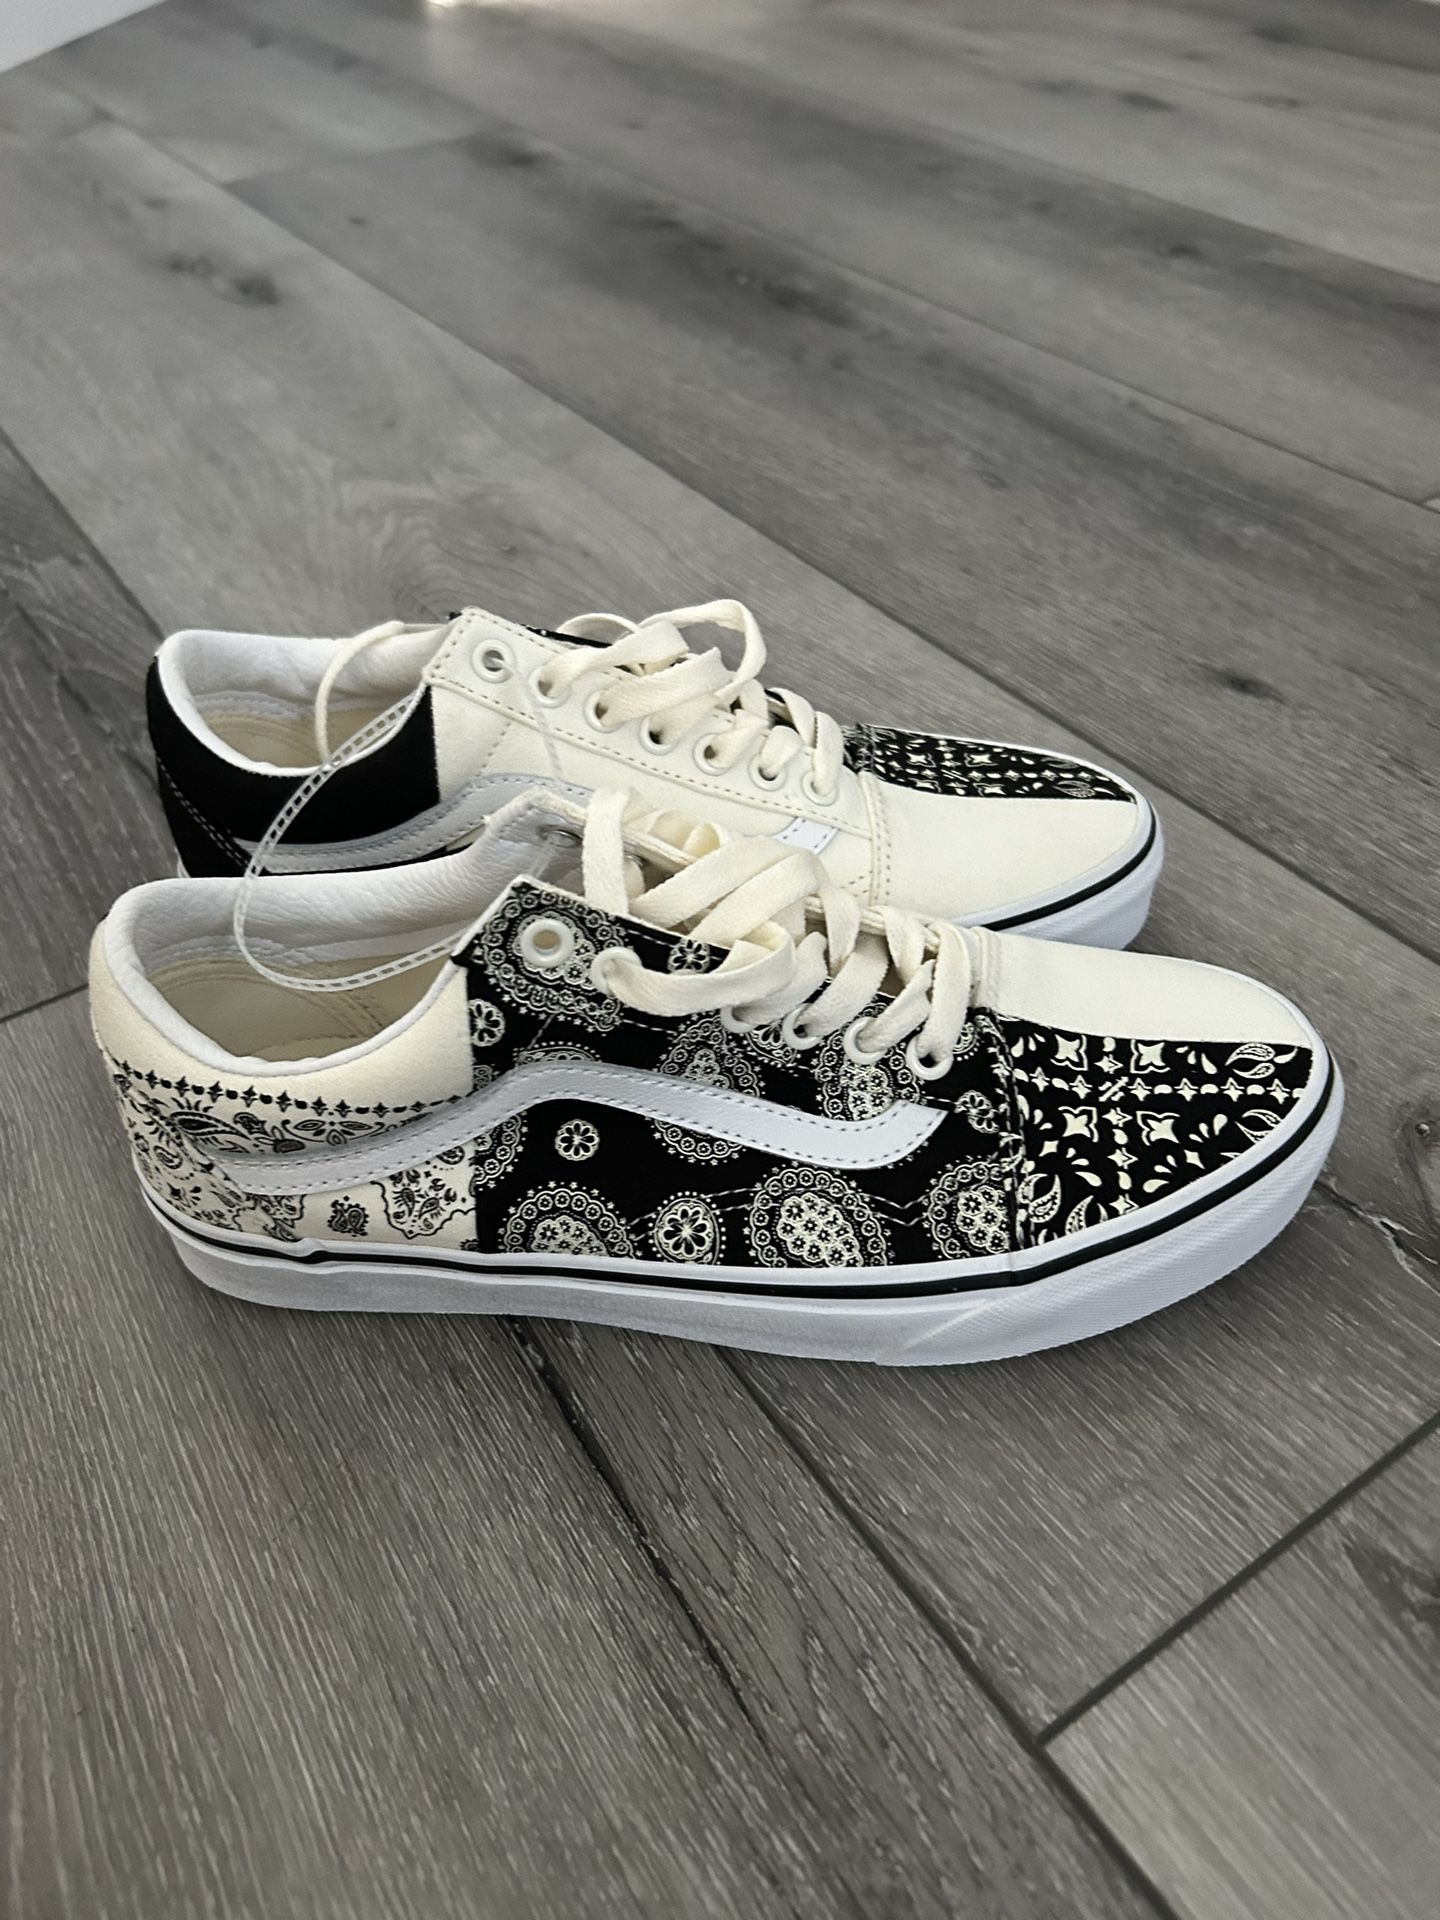 New Vans Old Skool Split Paisley Black/White Sneakers Low-Top Shoes size 8.5